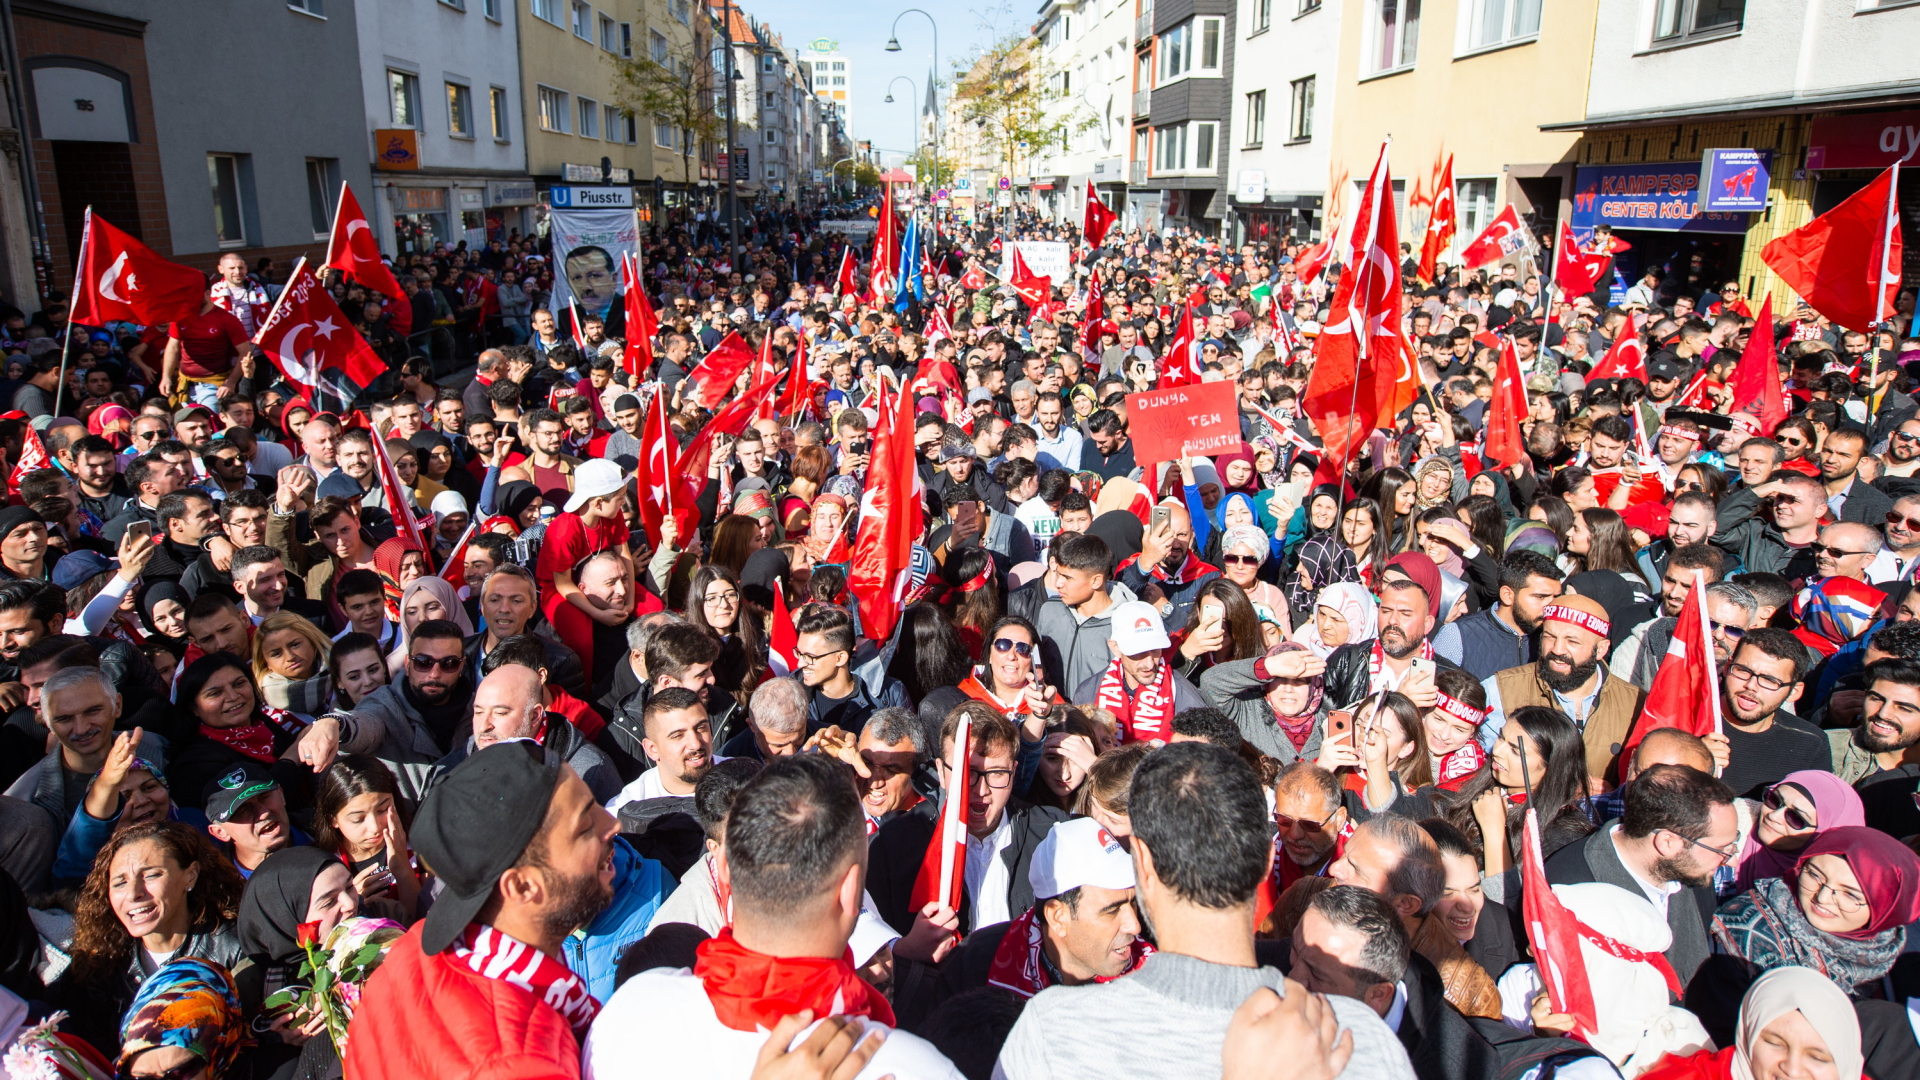 Anhänger des türkischen Präsidenten REcep Tayyip Erdogan bei dessen Besuch in Köln. | Bildquelle: dpa